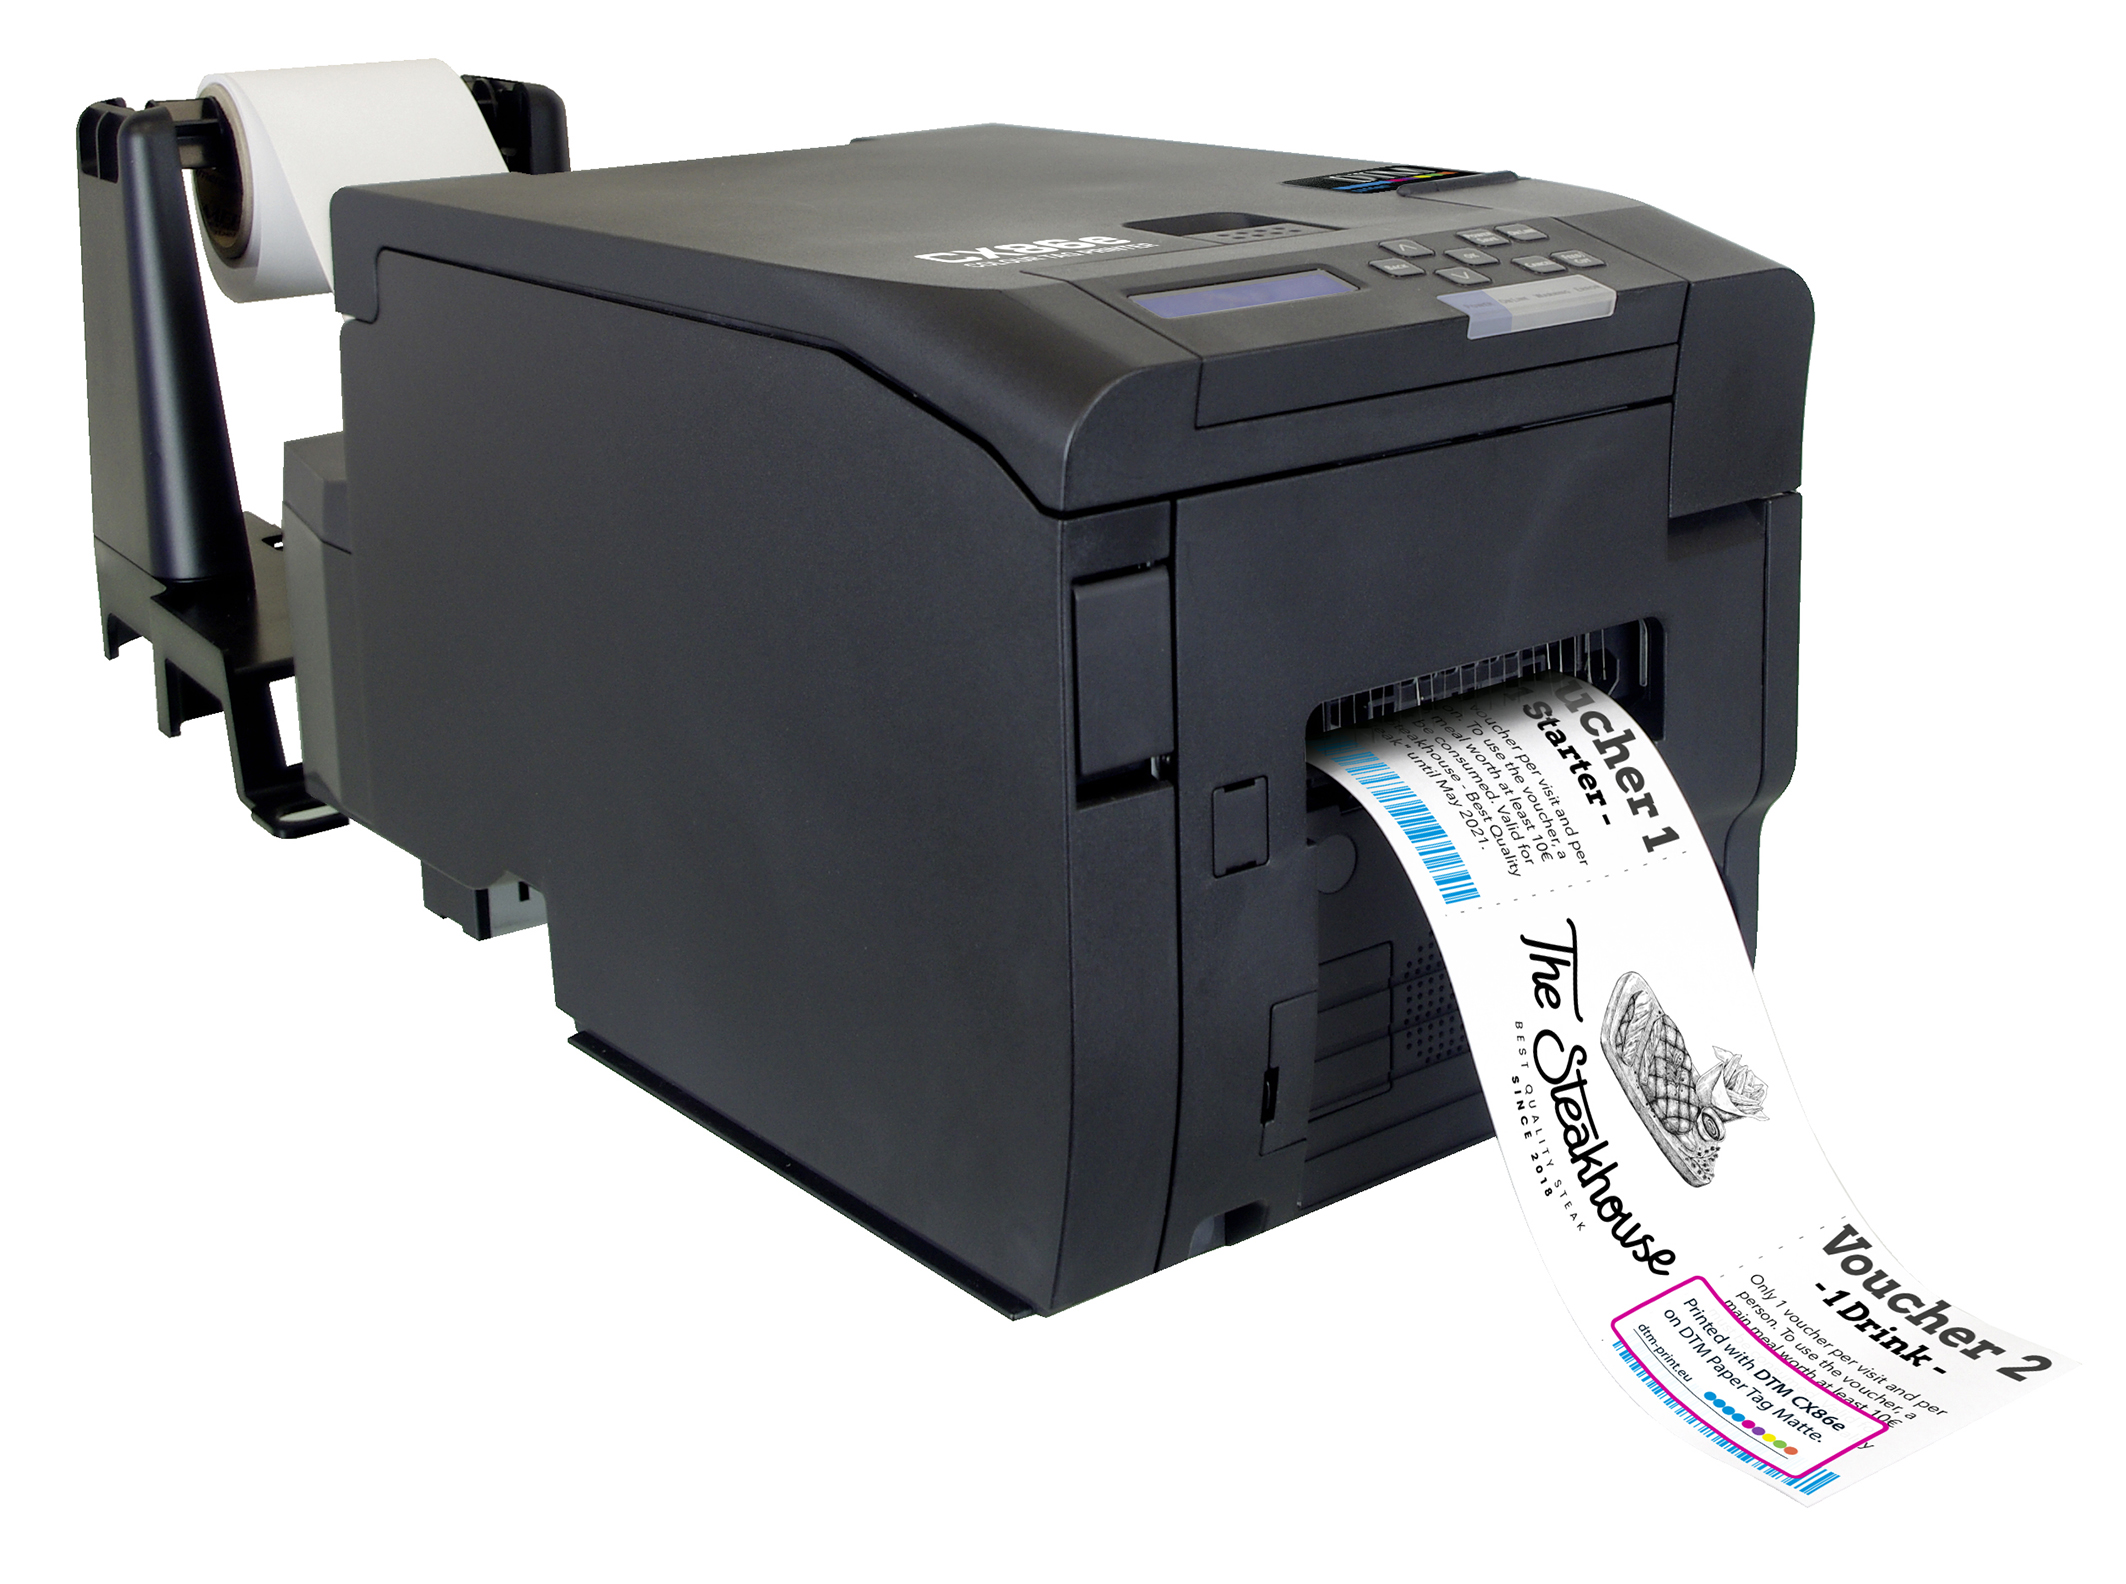 LED-Druckzeilen Farb separaten Label Netzwerkfähig WLAN drei DTM Elektrofotografische (CMY) Etikettendrucker CX86e Labelprinter mit PRINT Vollfarb-Drucktechnologie Printer